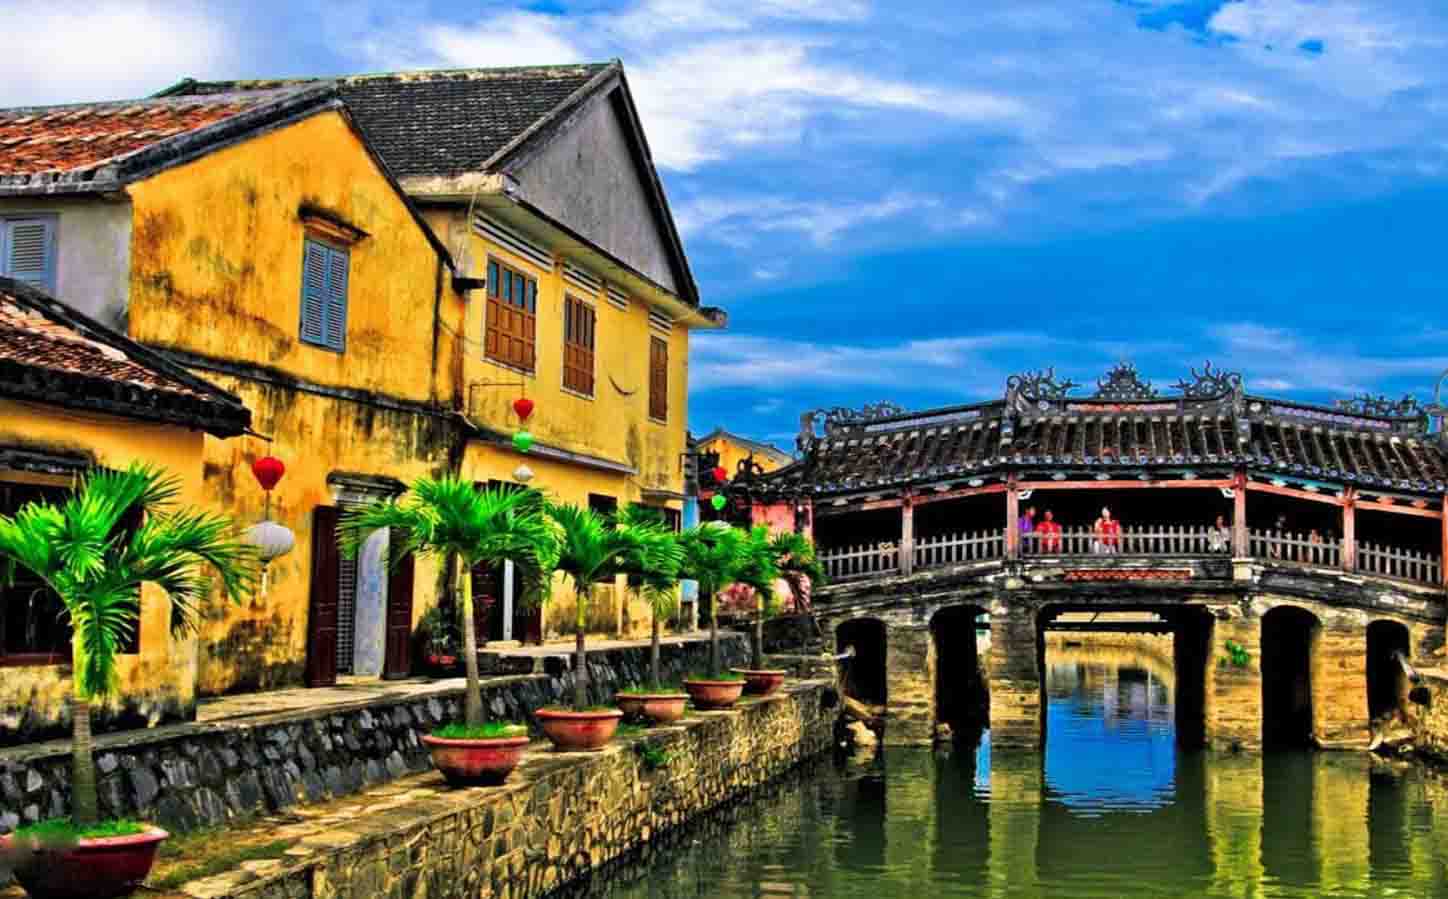 Road of Vietnam heritage 